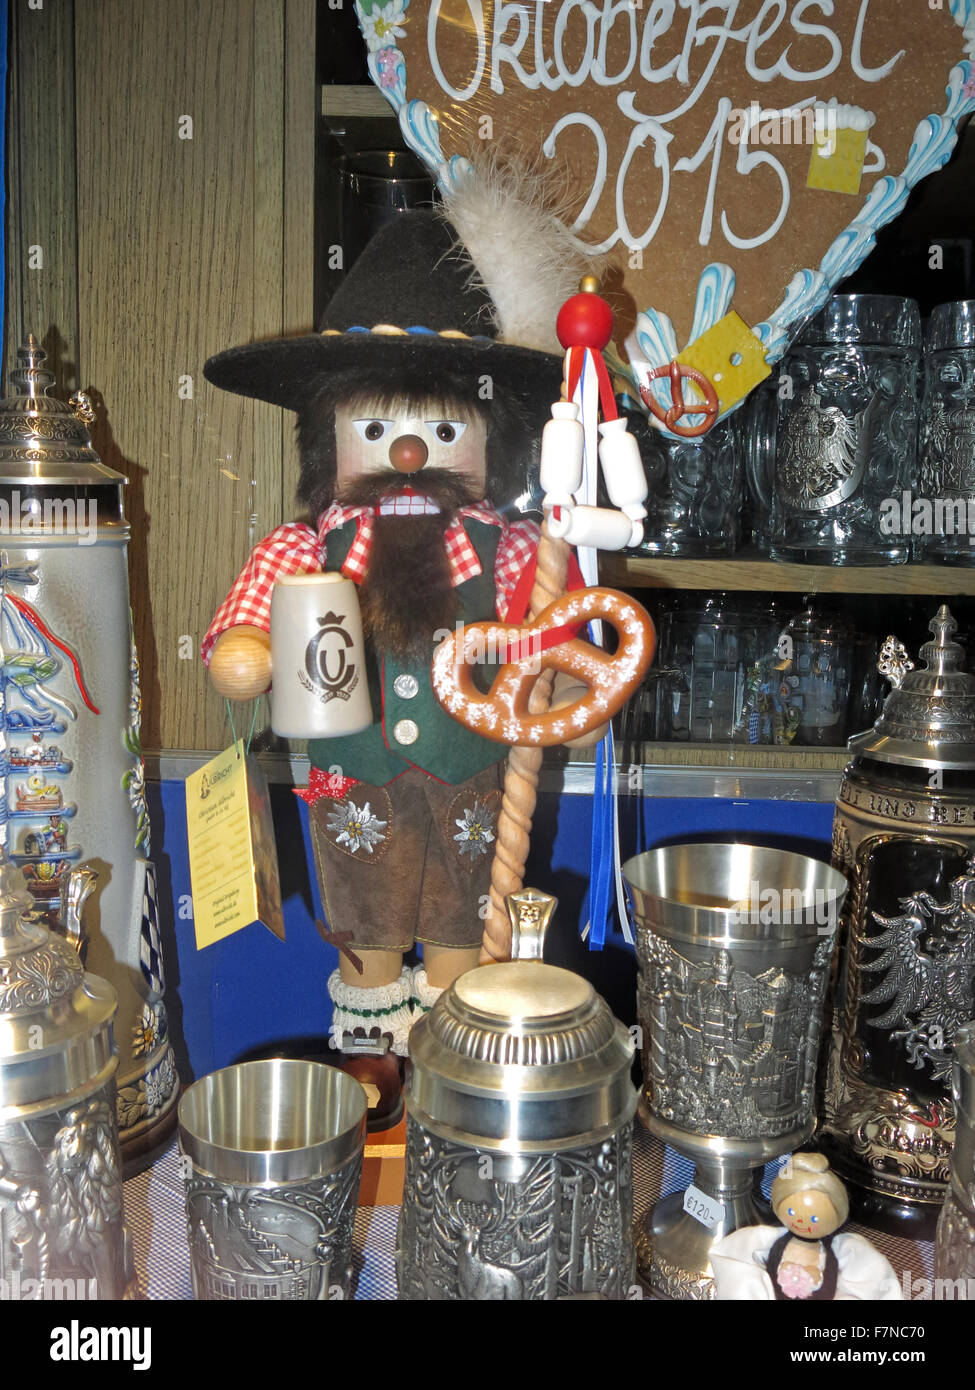 Affichage de vitrine de l'Oktoberfest, Munich, Allemagne ; Stein, poupées, T-shirts et autres souvenirs Banque D'Images